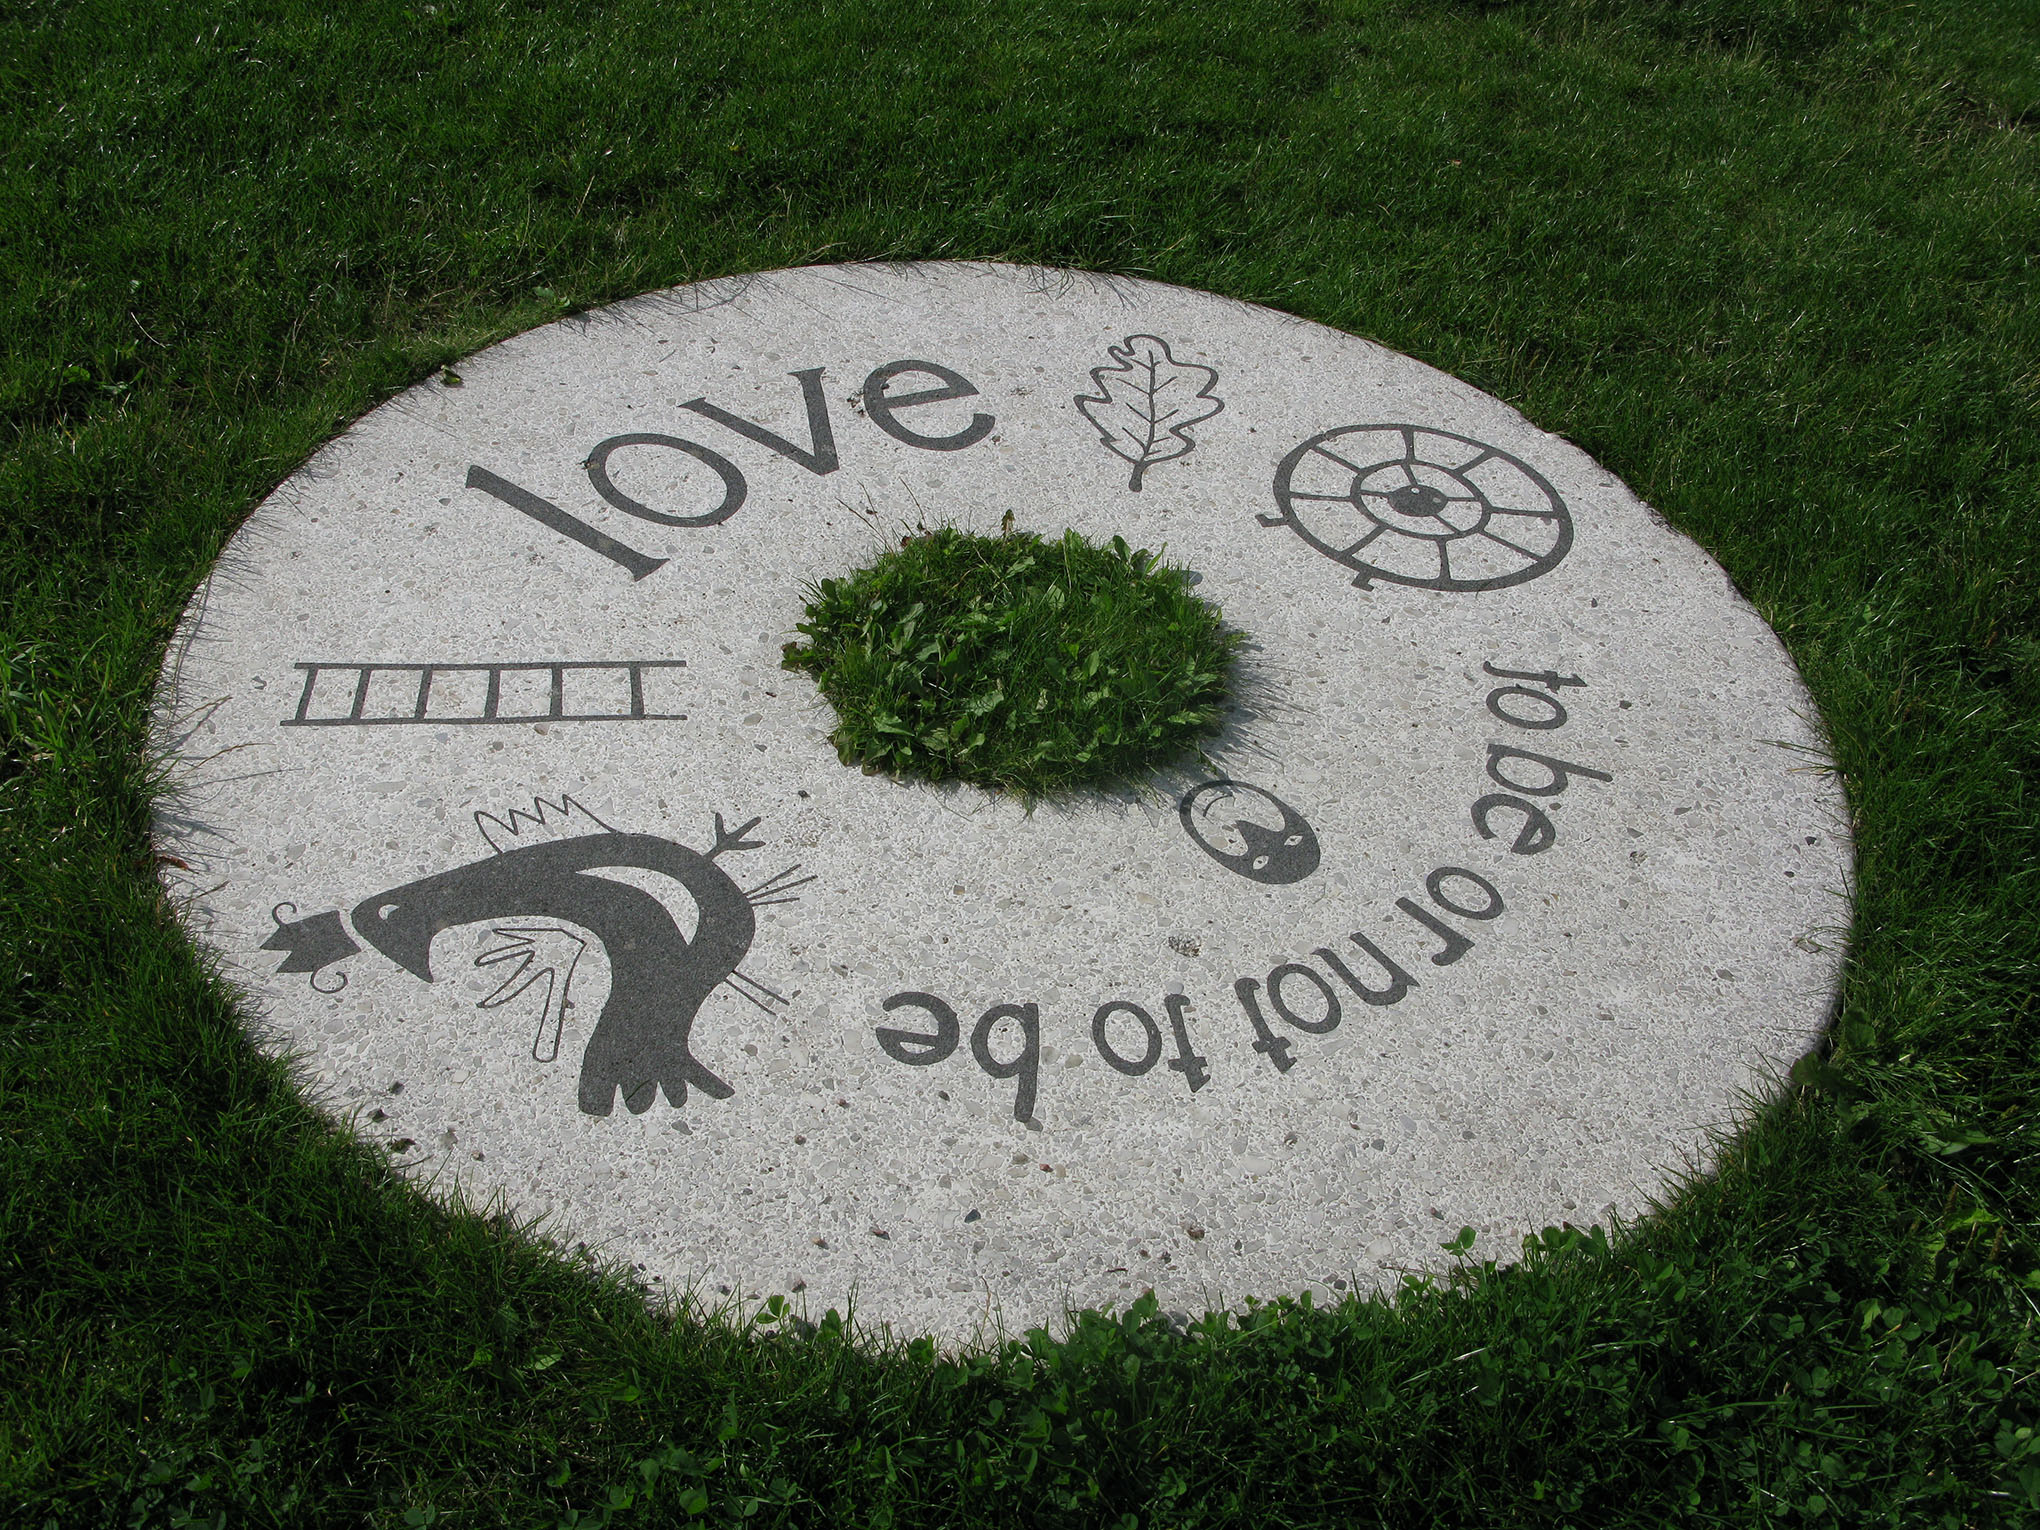 Love to be or not to be står det på en rund sten som är i gräs på marken. Flera symboler finns också på stenen som ett löv, en stege, en fågel och en rund ring